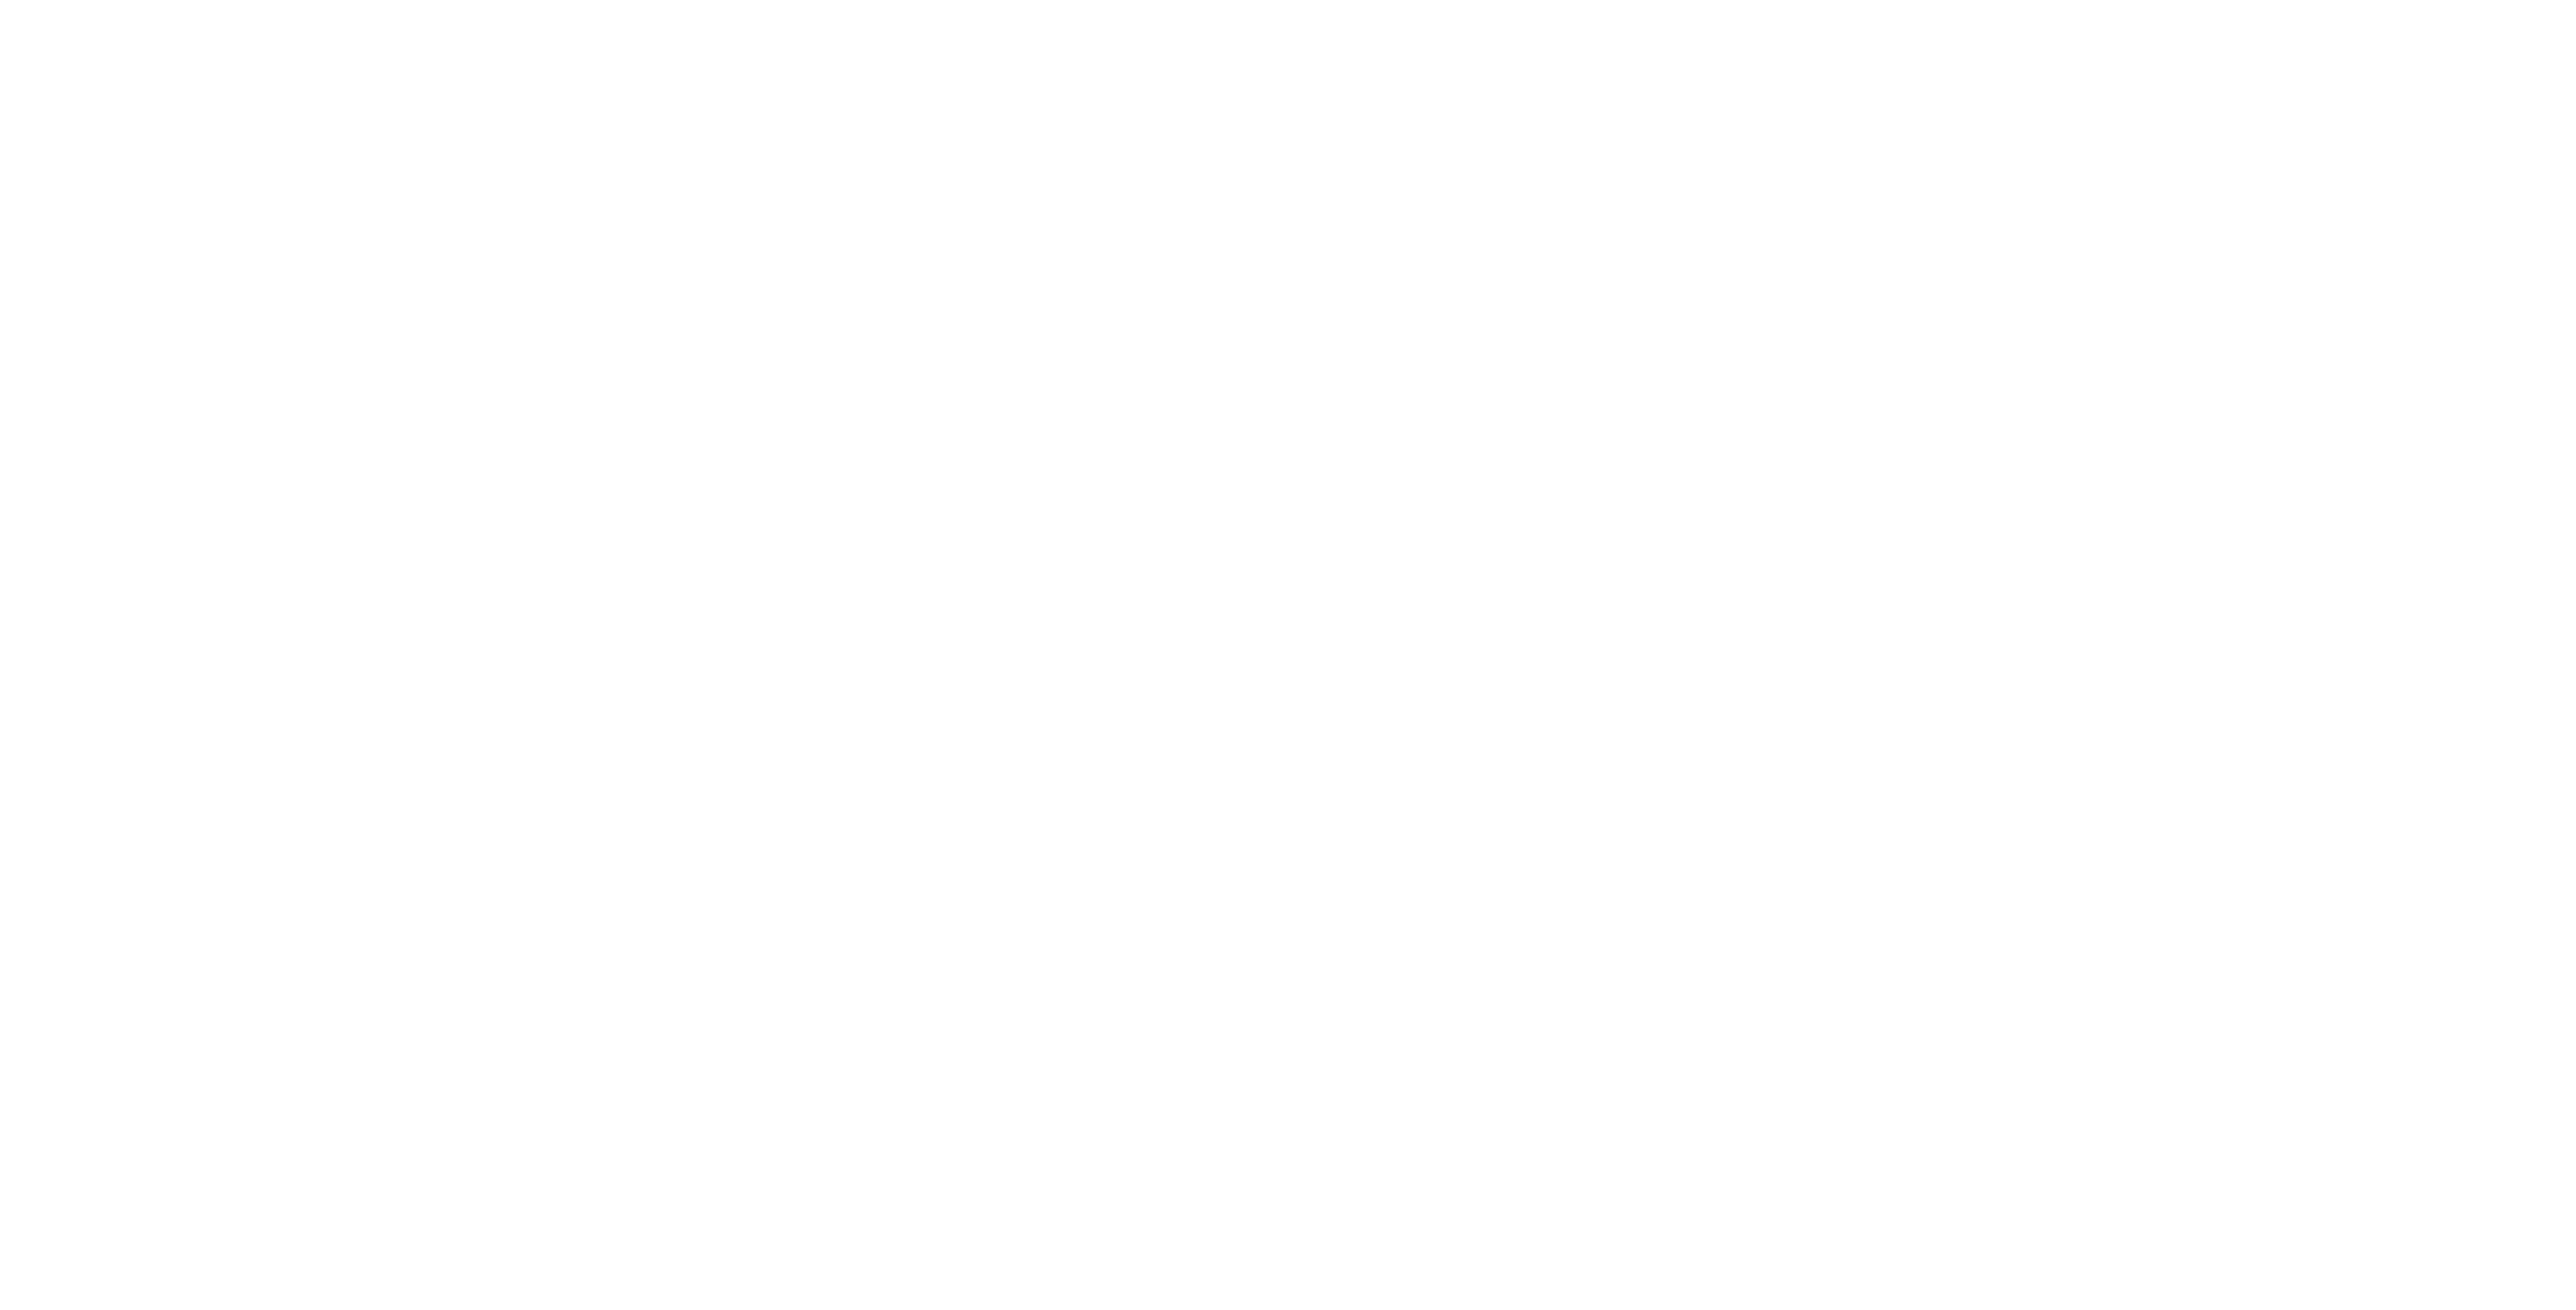 FD gazelle